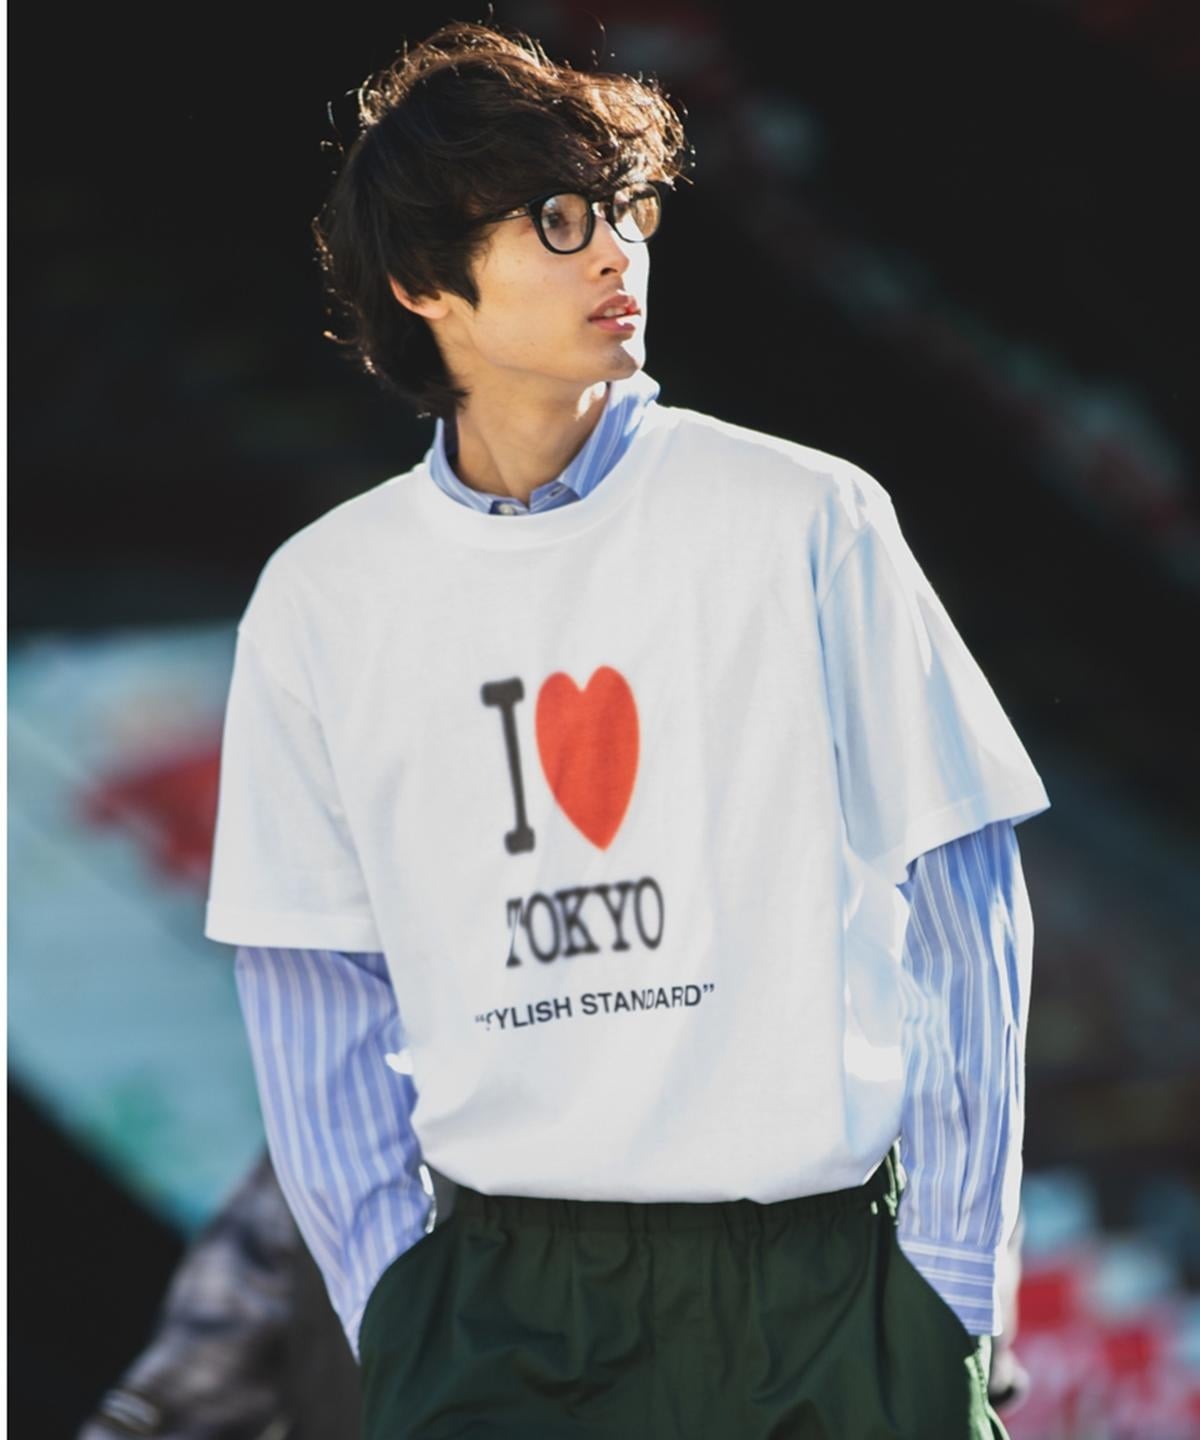 SHIPS: I LOVE TOKYO Tシャツ ライトホワイト